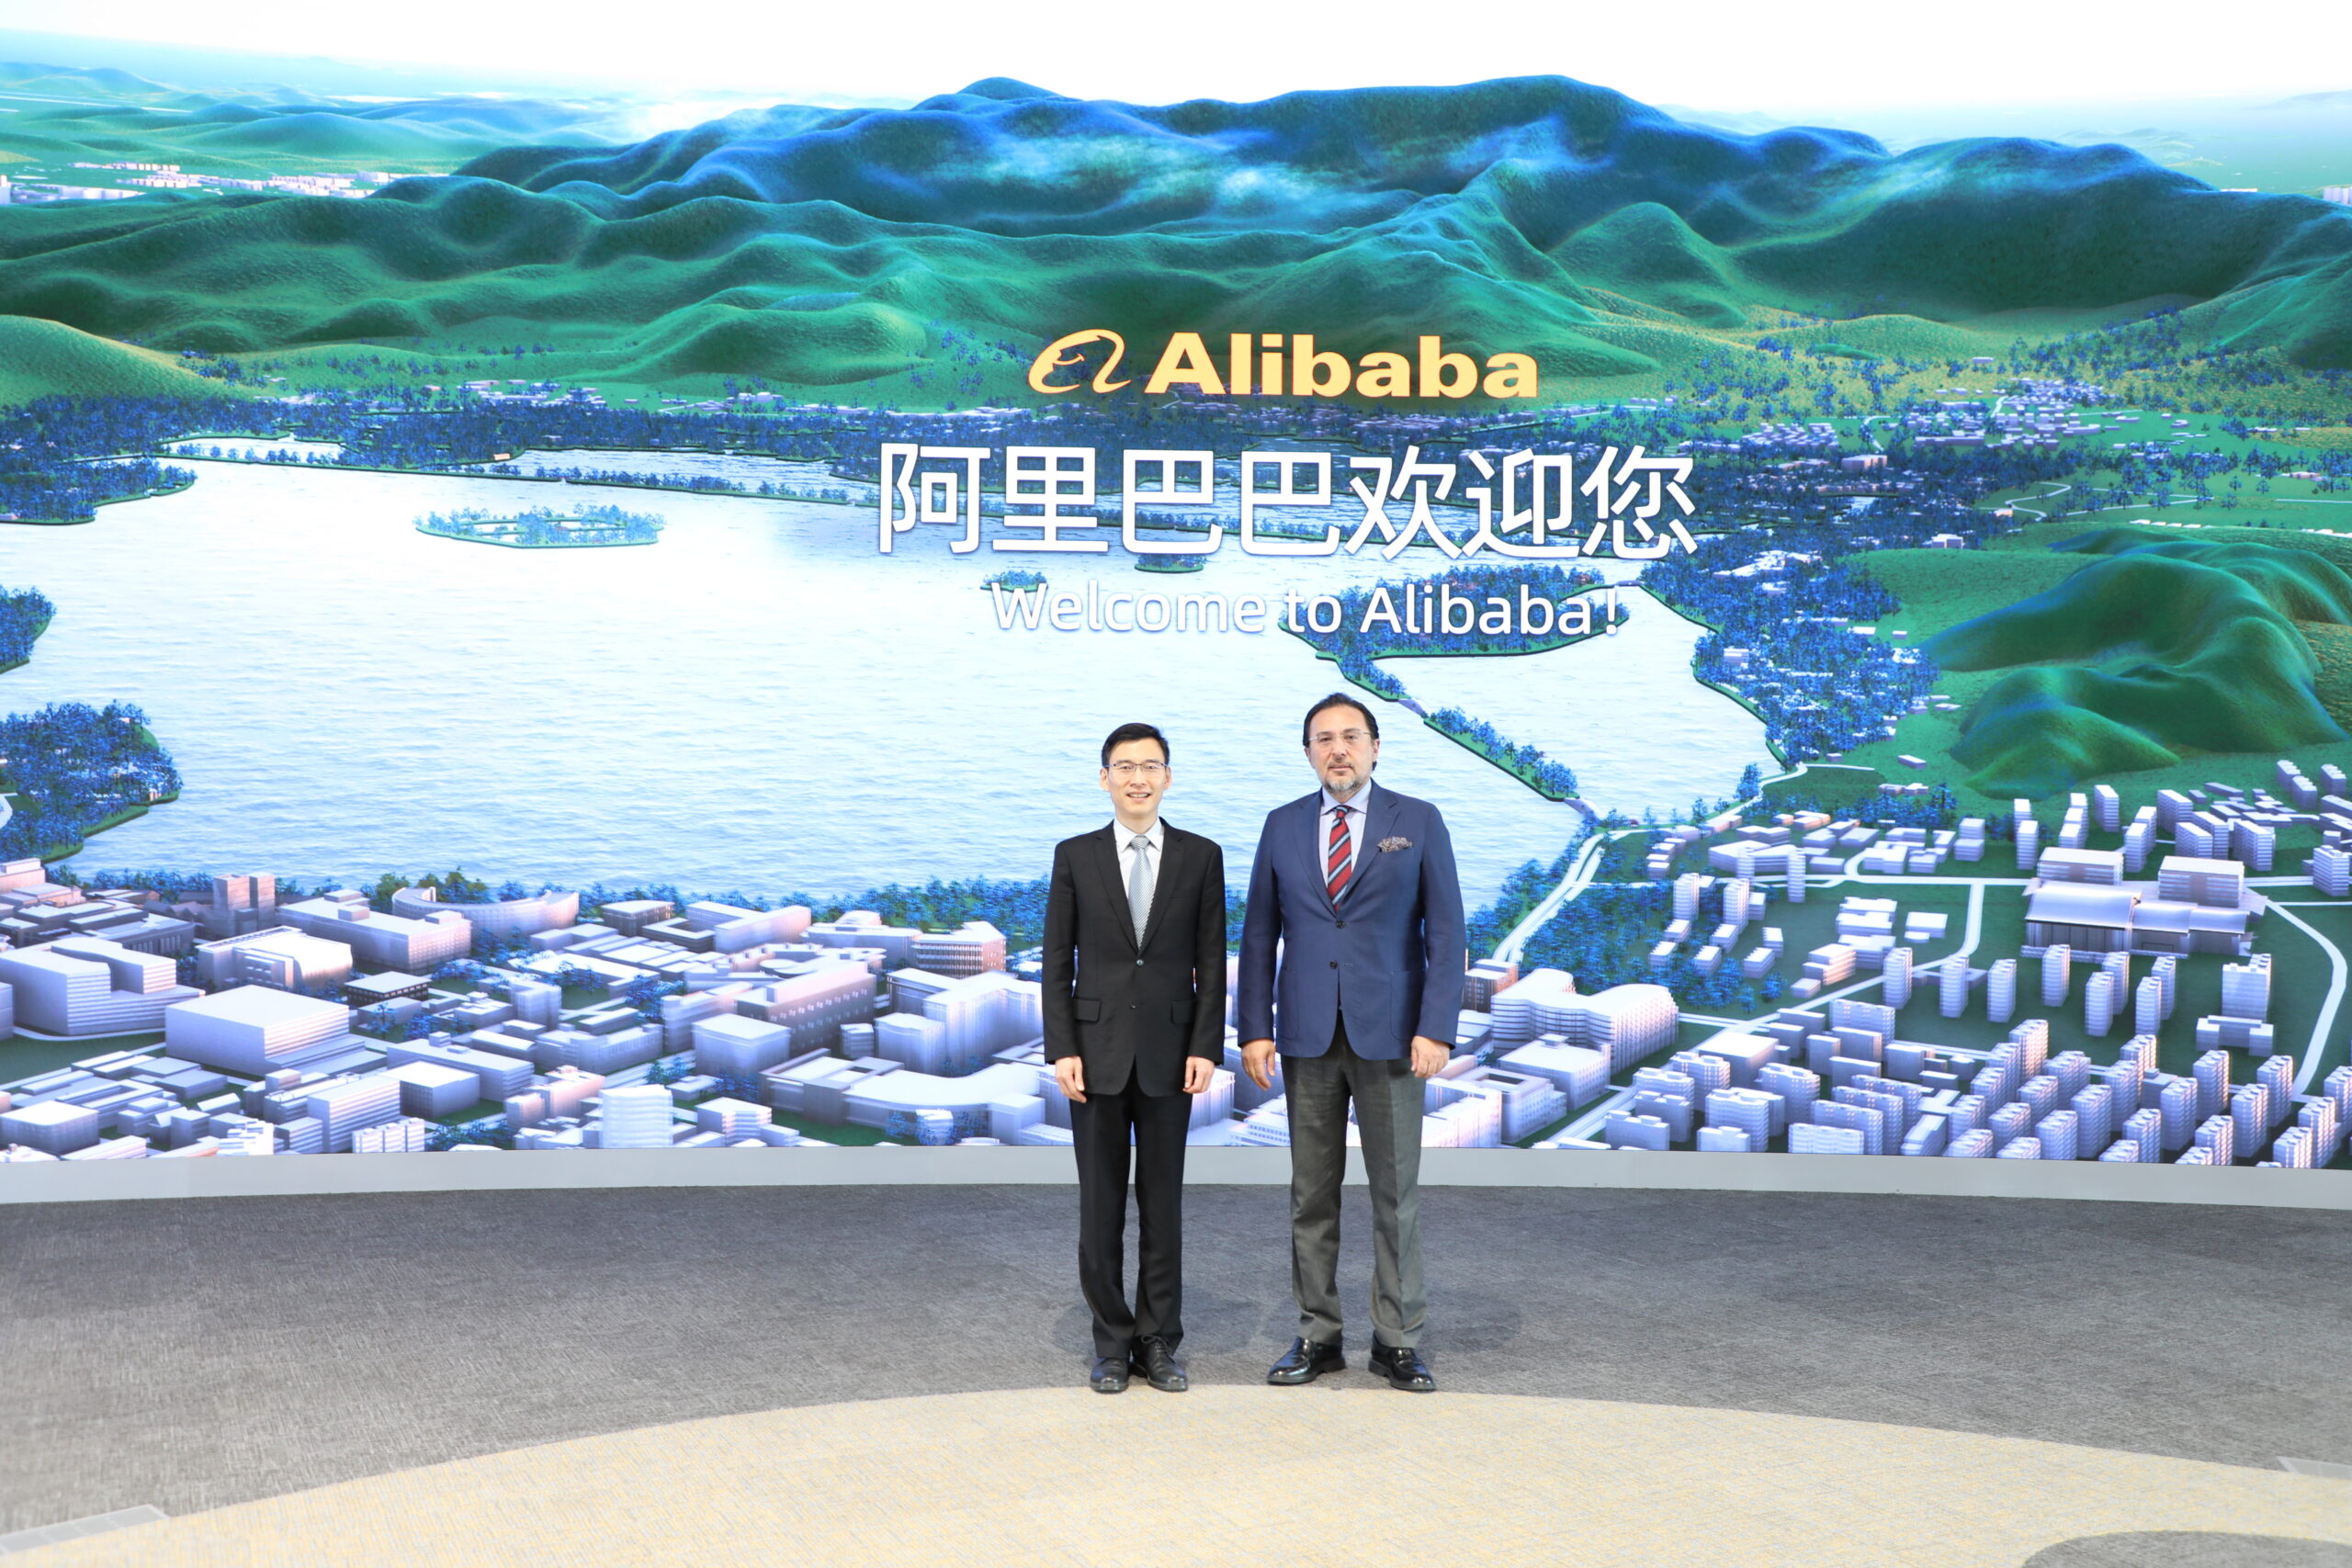 Çin seyahatimizin önemli duraklarından biri de Hangzhou şehrindeki AliBaba kampüsüydü..